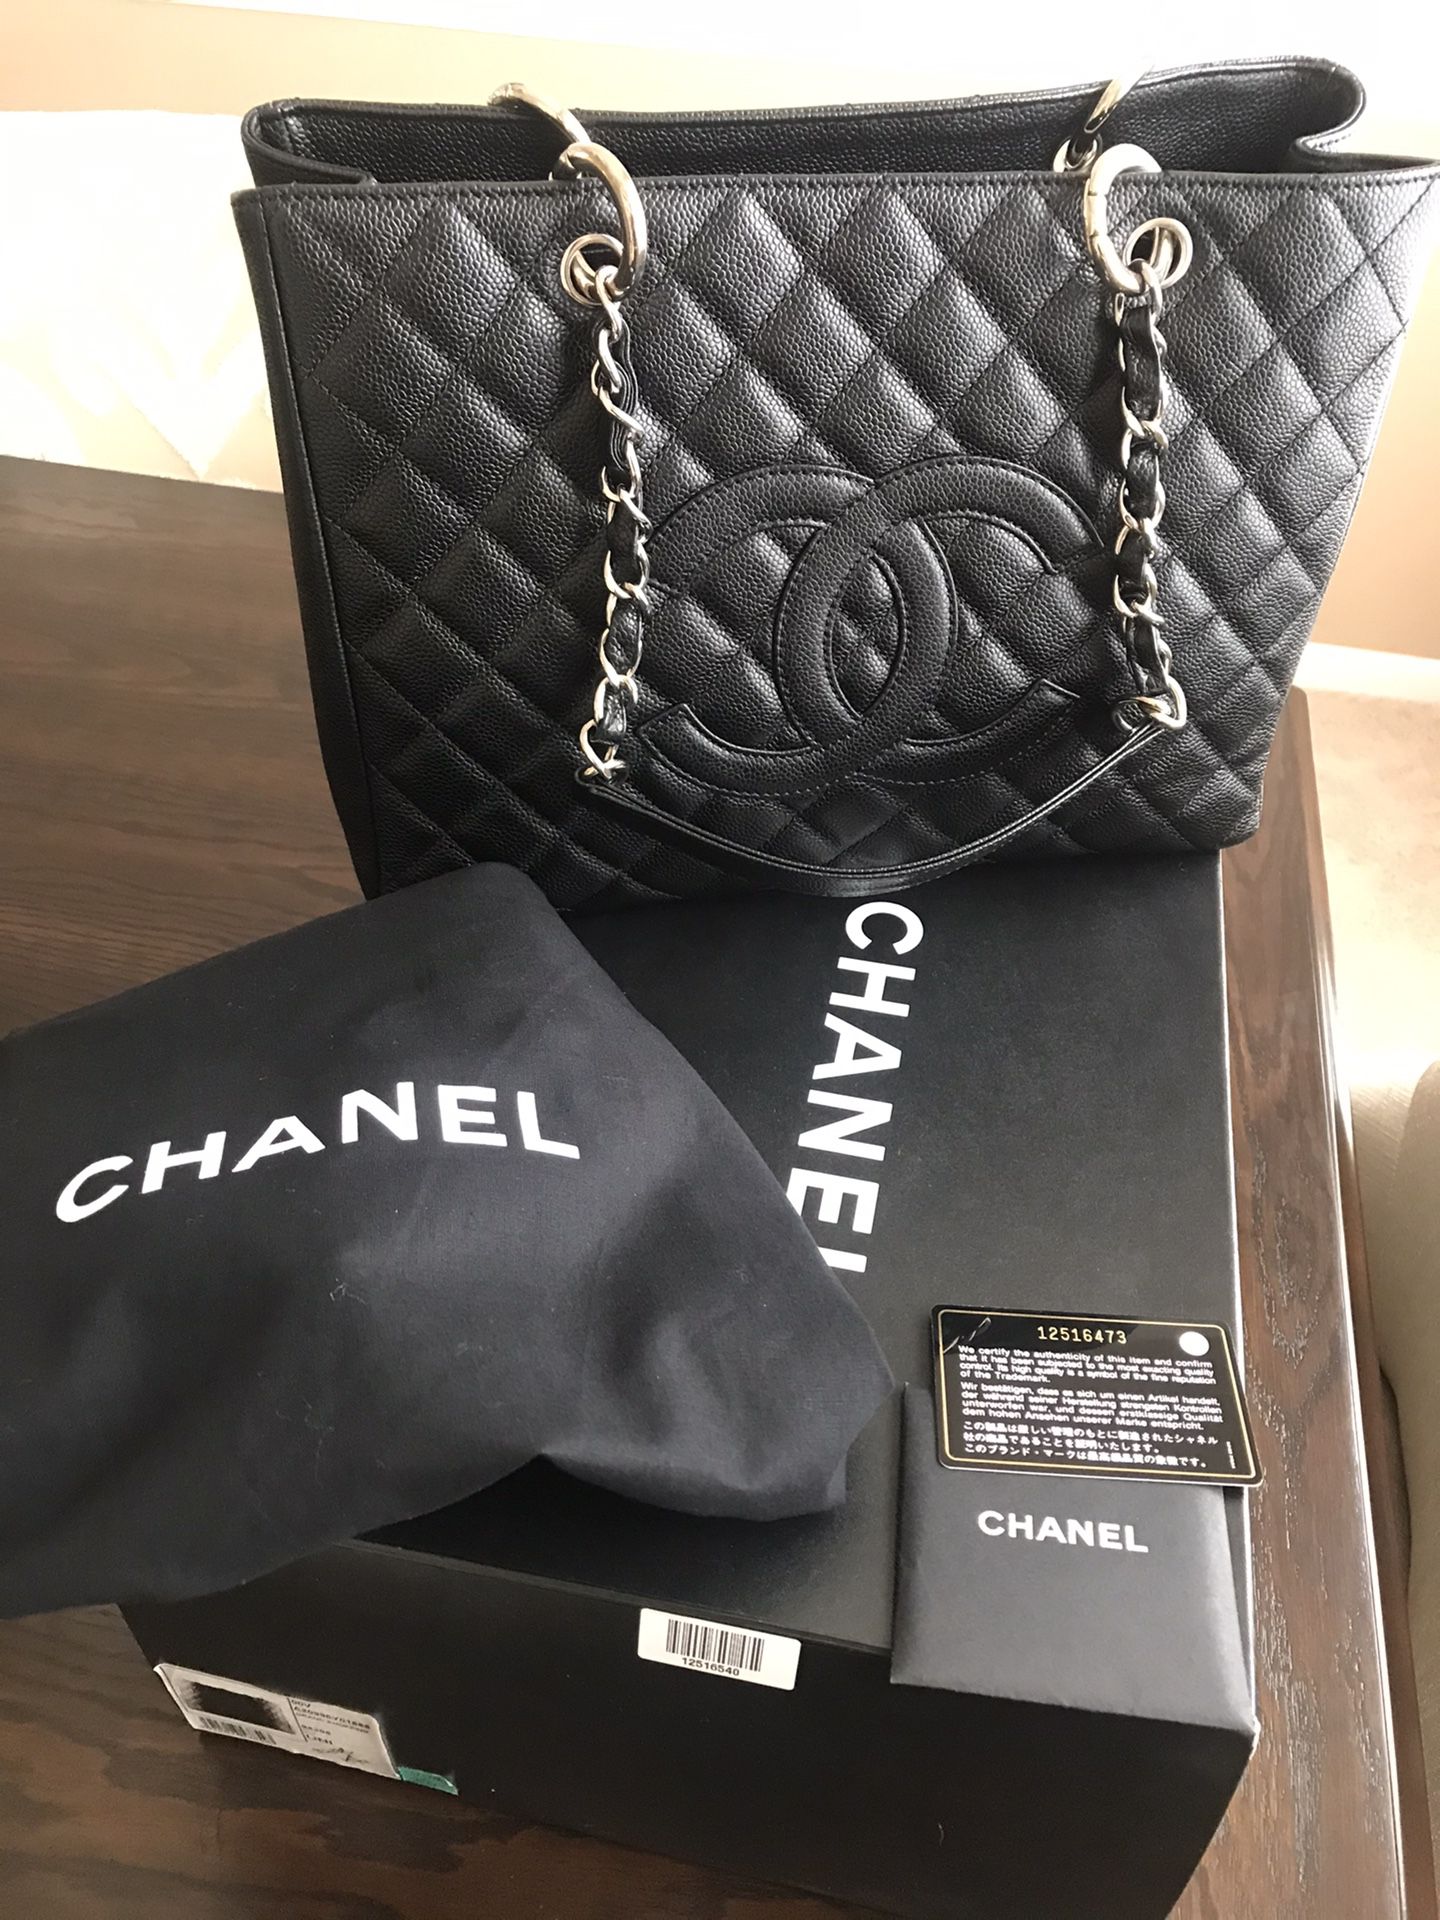 CHANEL GST Grand Shopper Tote Black Caviar Bag